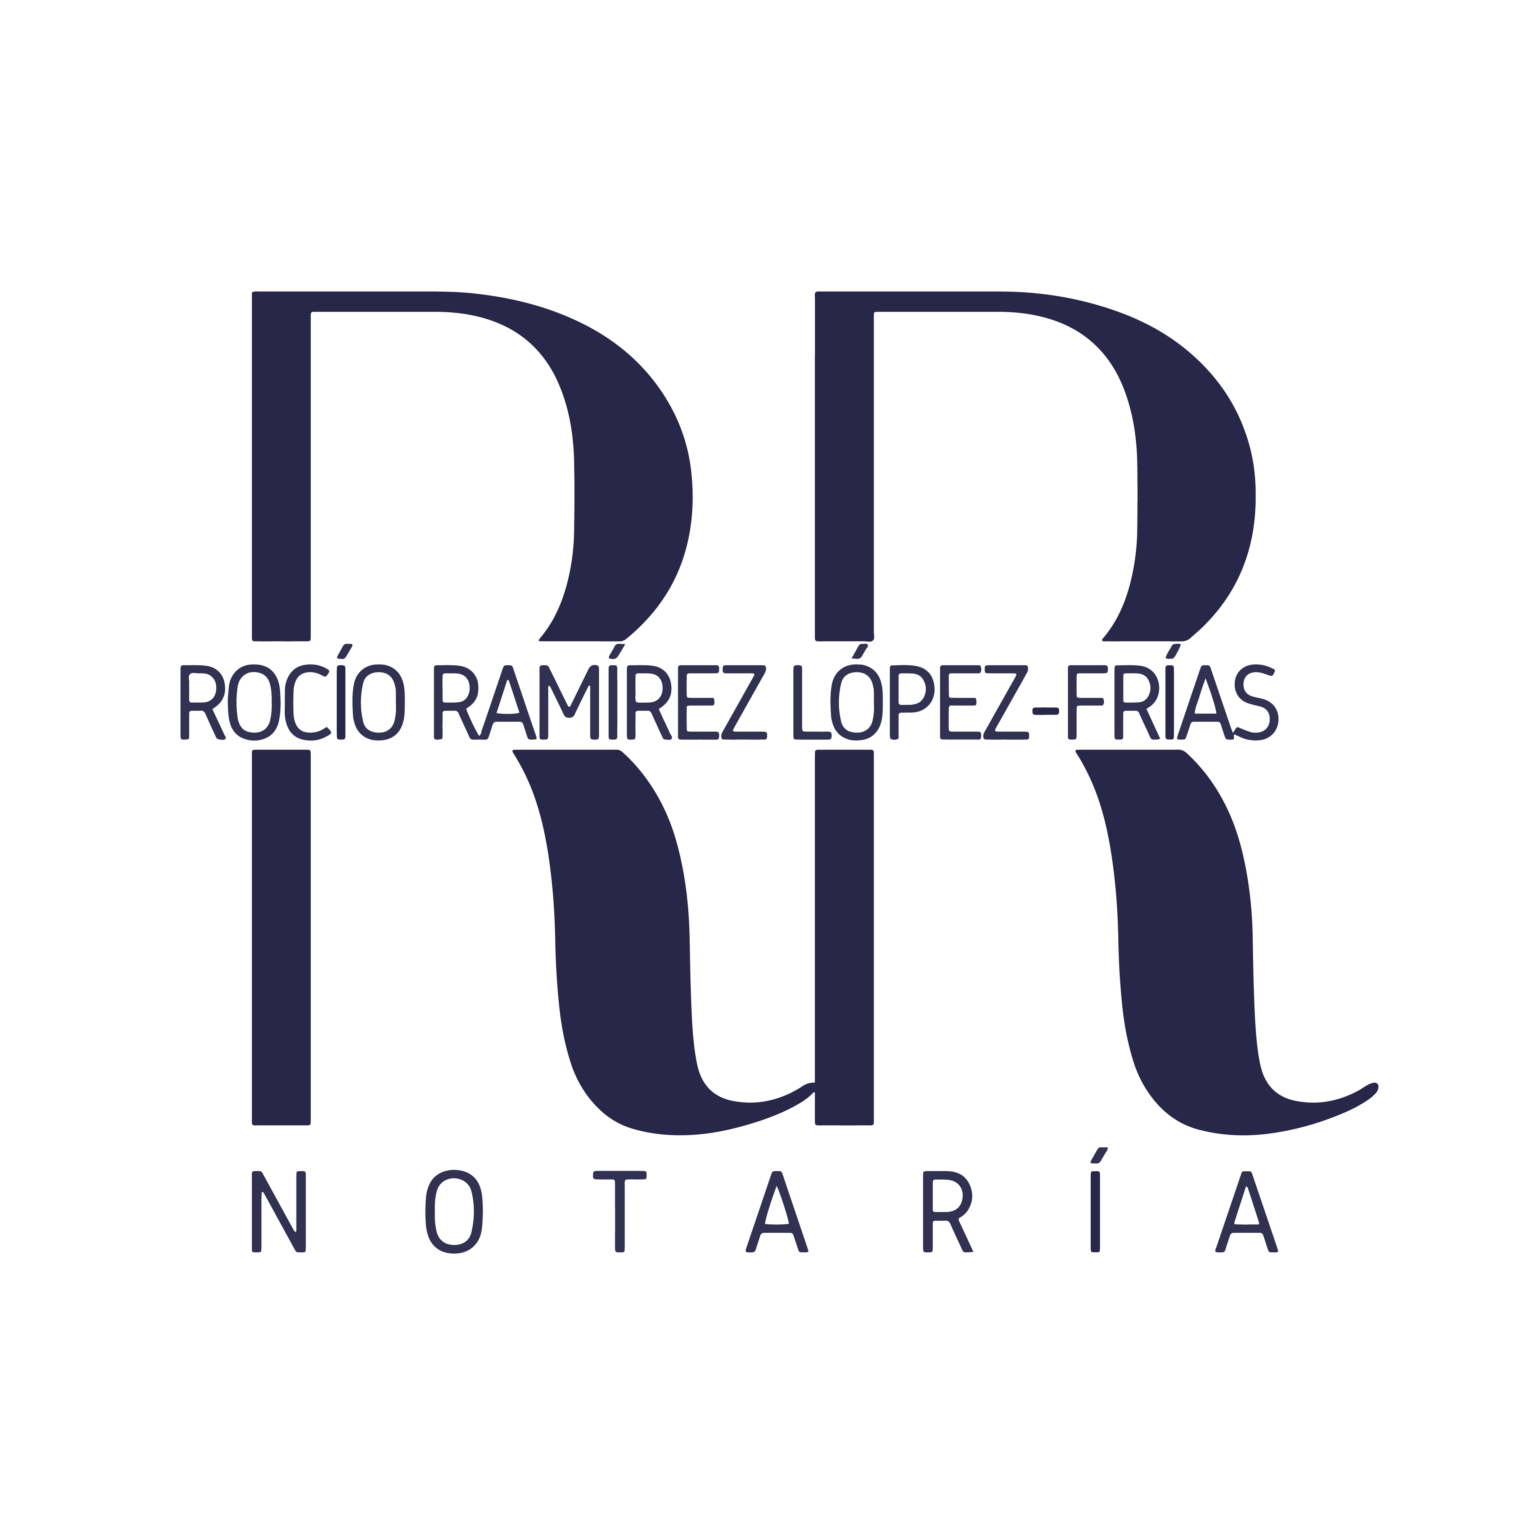 RRNotaria.com: Notaría L'Estartit en Torroella de Montgrí